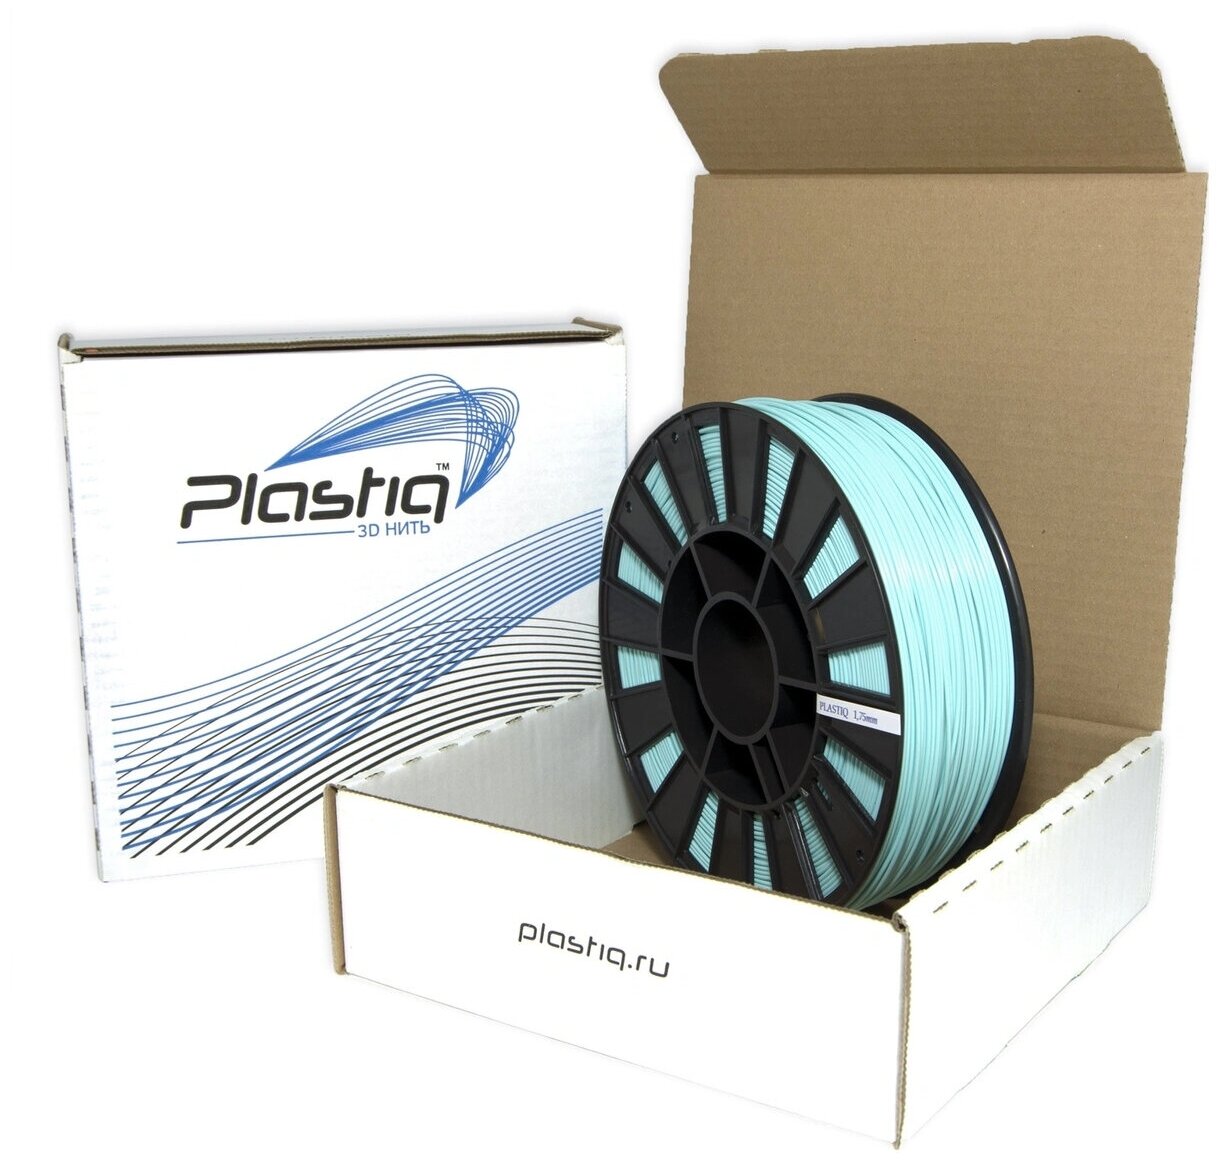 Пластик ABS для 3D принтера Лазурный Plastiq, 1.75мм, 400 метров